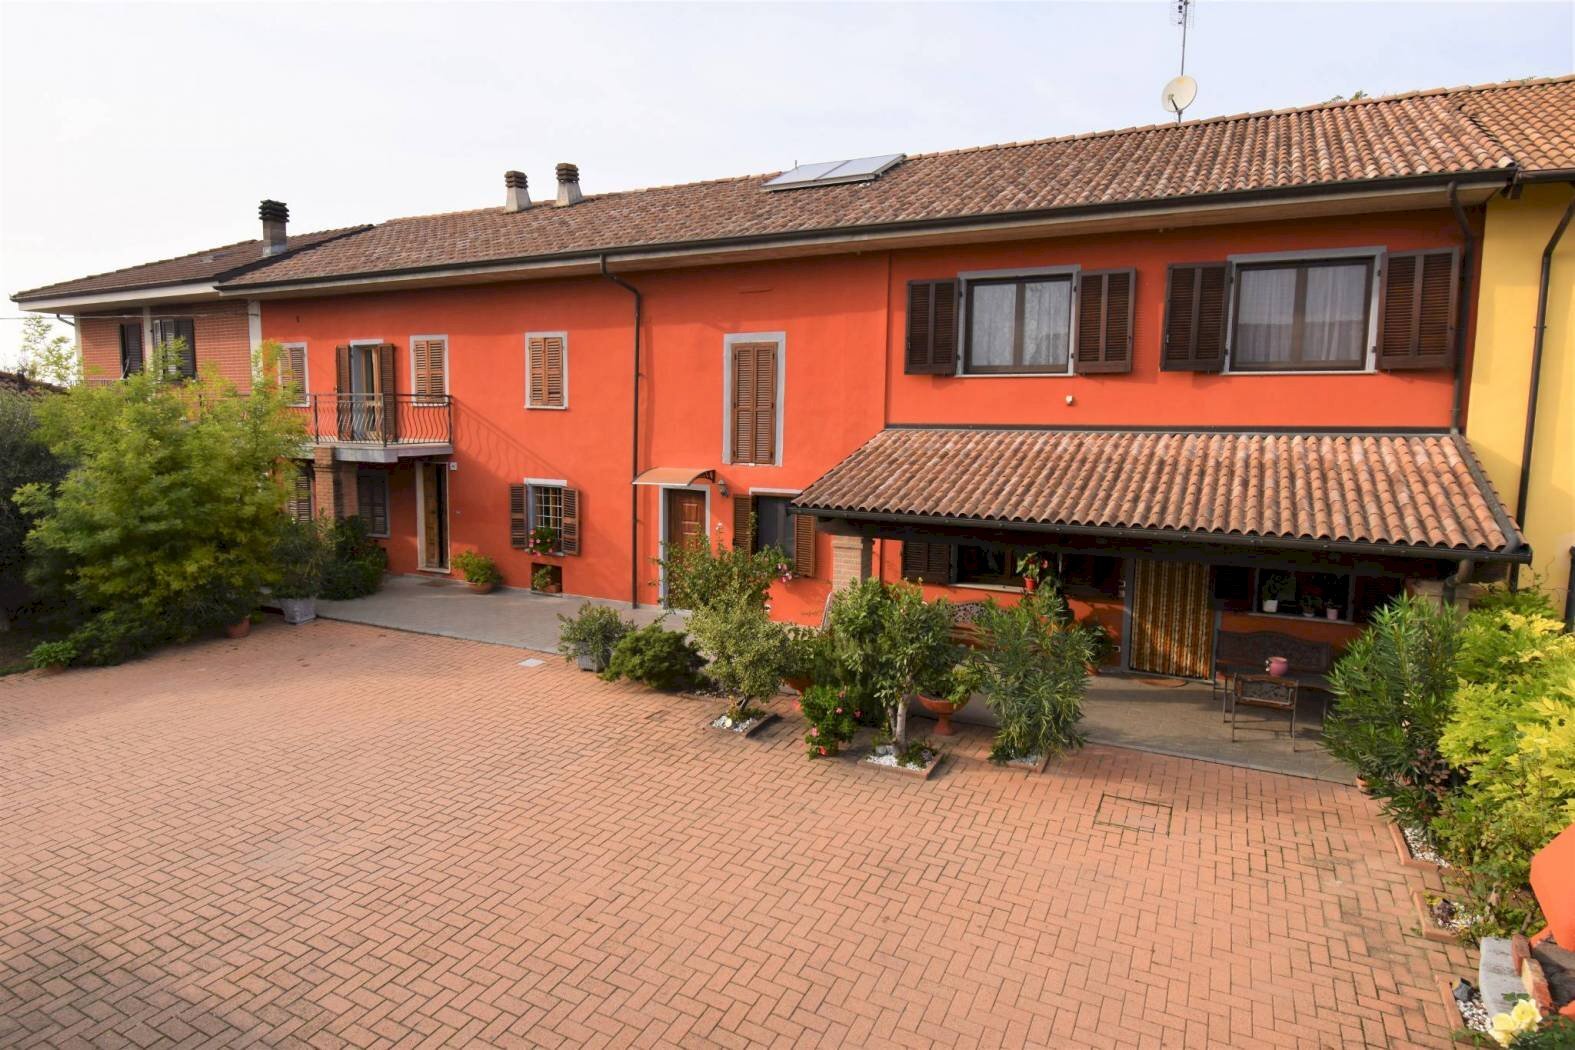 Rustico / Casale in vendita a Agliano Terme, 1 locali, prezzo € 270.000 | CambioCasa.it